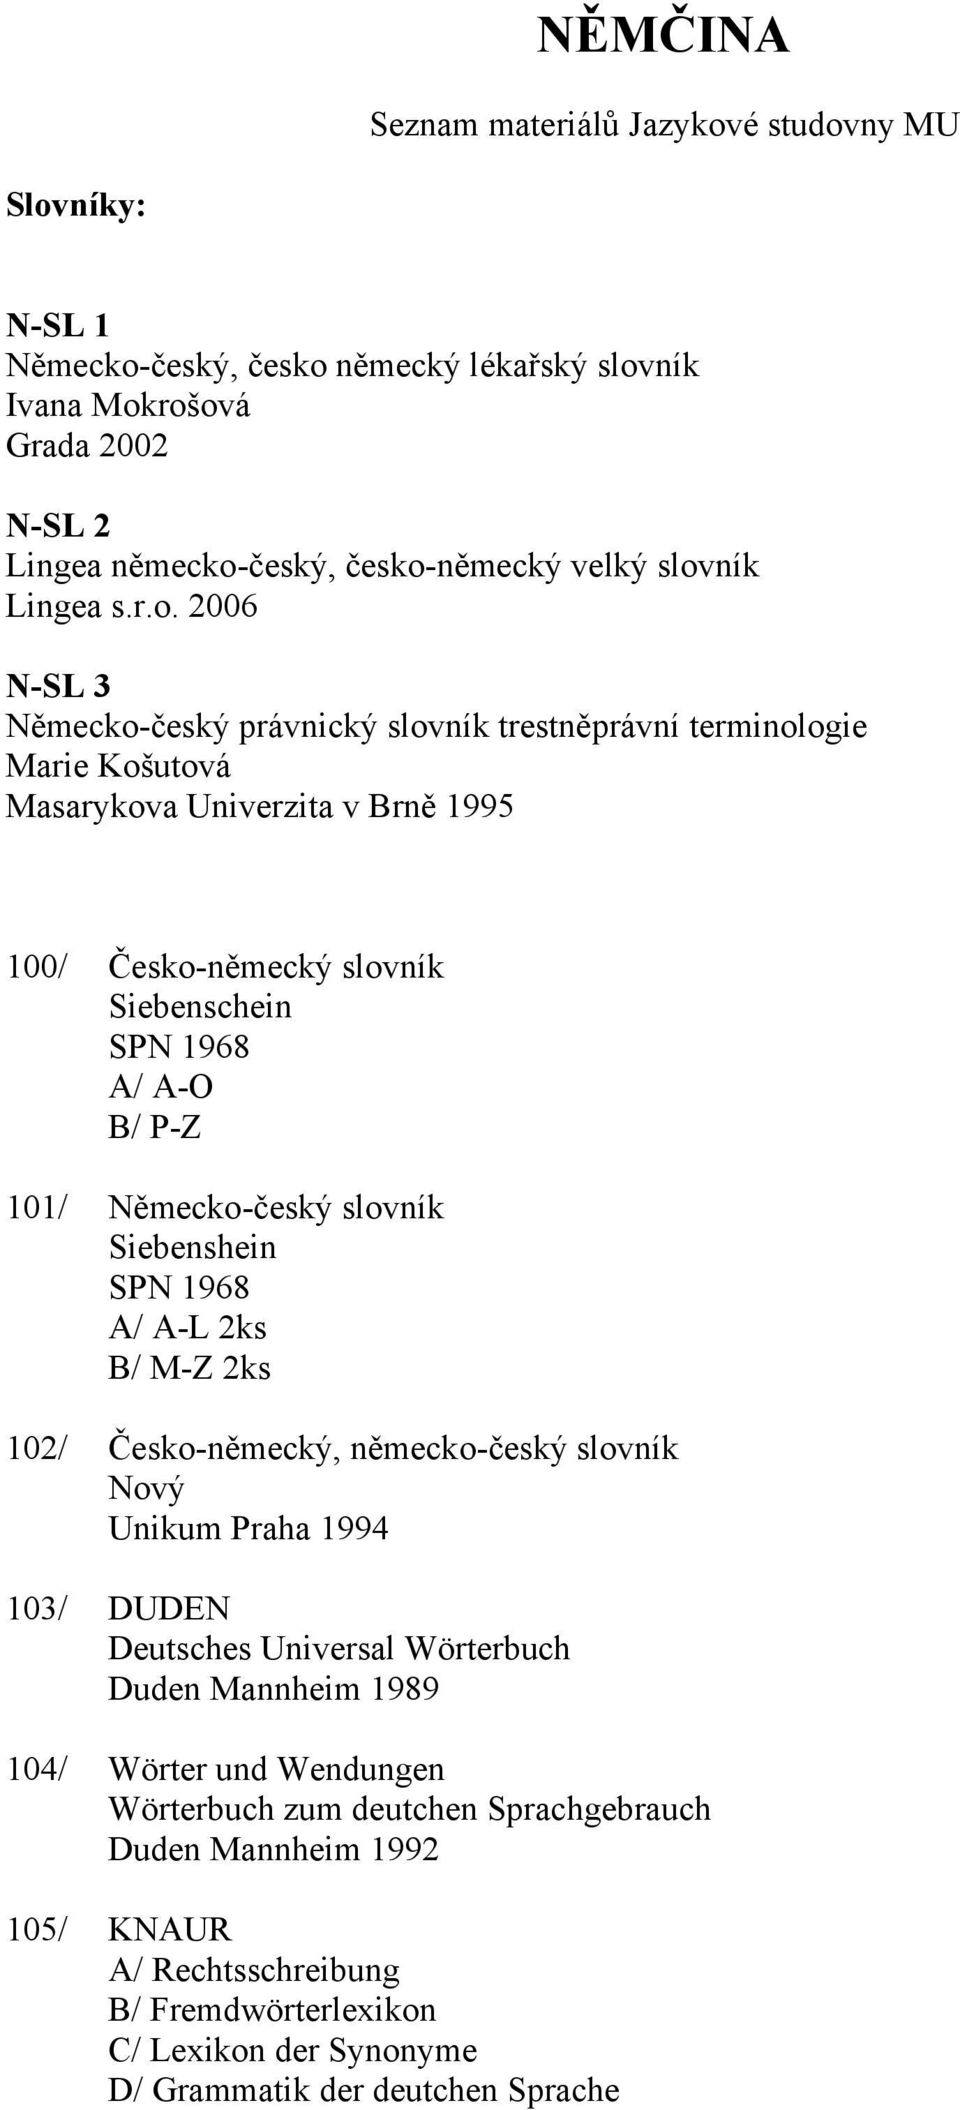 Německo-český slovník Siebenshein SPN 1968 A/ A-L 2ks B/ M-Z 2ks 102/ Česko-německý, německo-český slovník Nový Unikum Praha 1994 103/ DUDEN Deutsches Universal Wörterbuch Duden